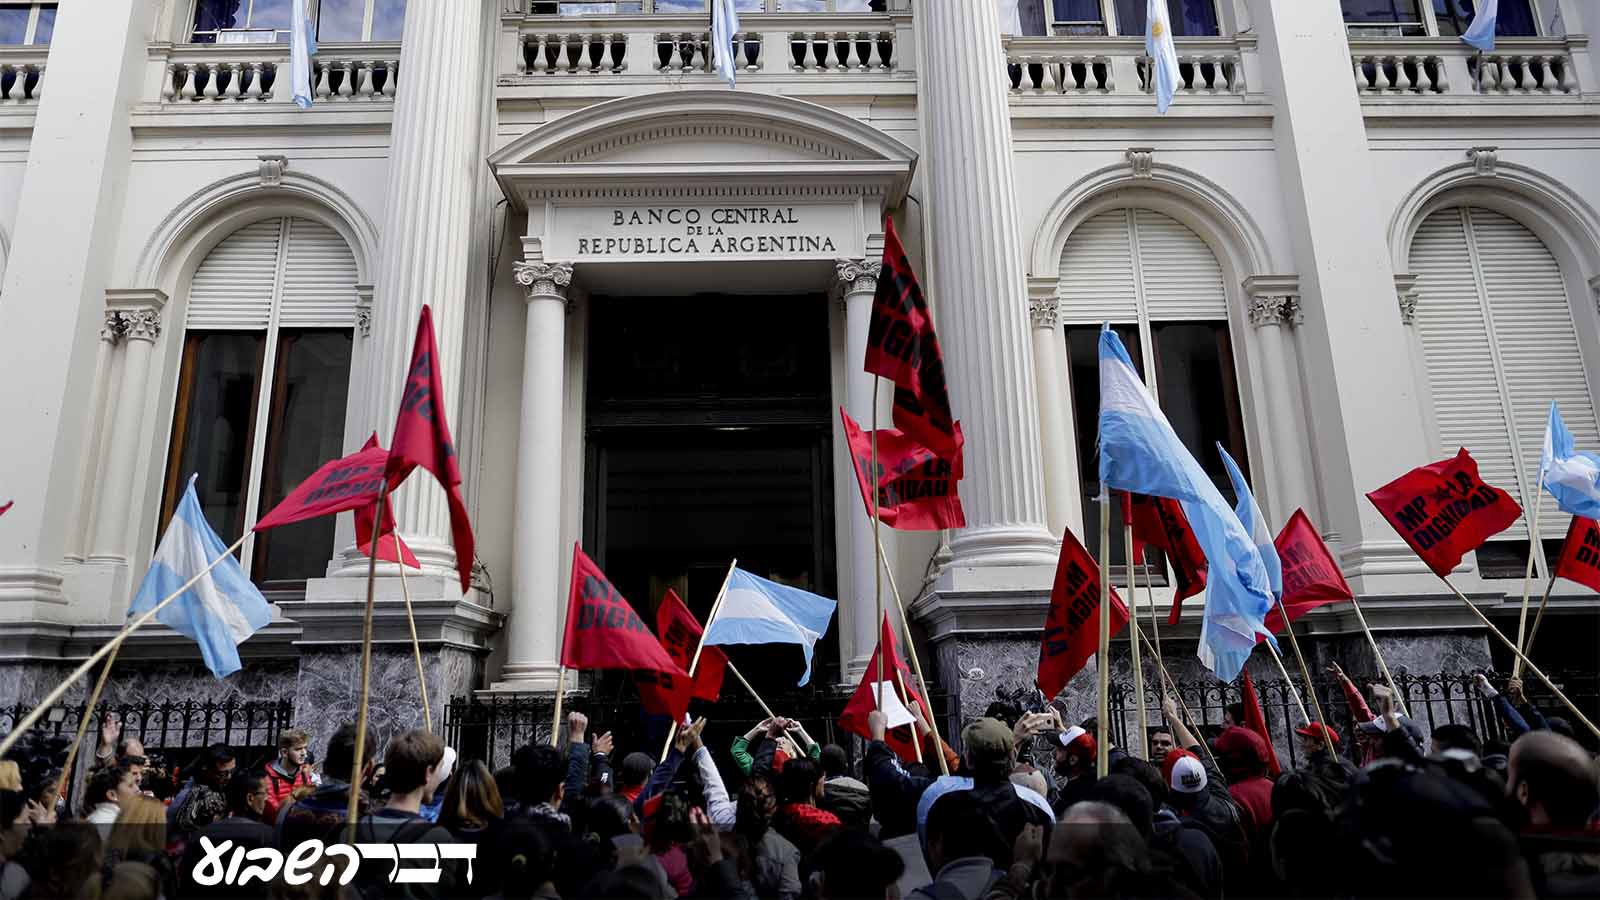 ארגנטינאים מפגינים מול הבנק המרכזי בבאינו איירס במחאה על הצעדים הכלכלים בהם נוקטת המדינה. 15 במאי 2018 (AP Photo/Natacha Pisarenko)